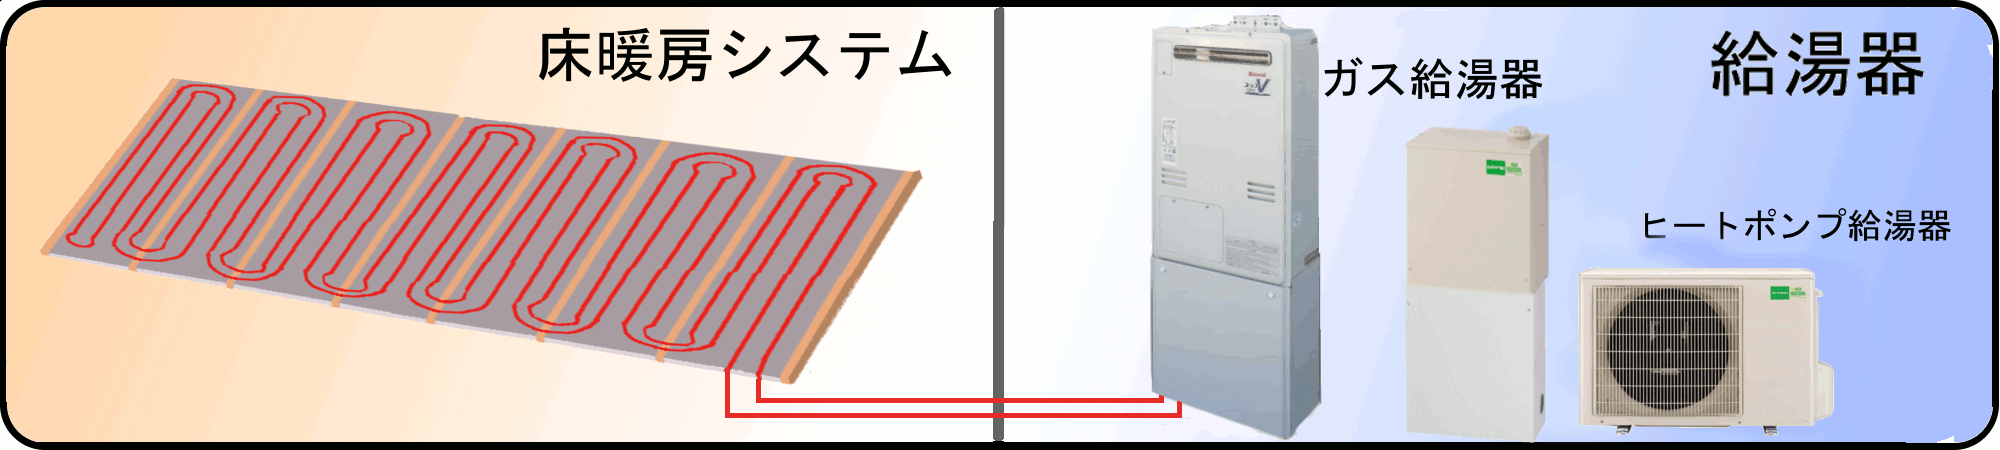 床暖房と給湯器の関係